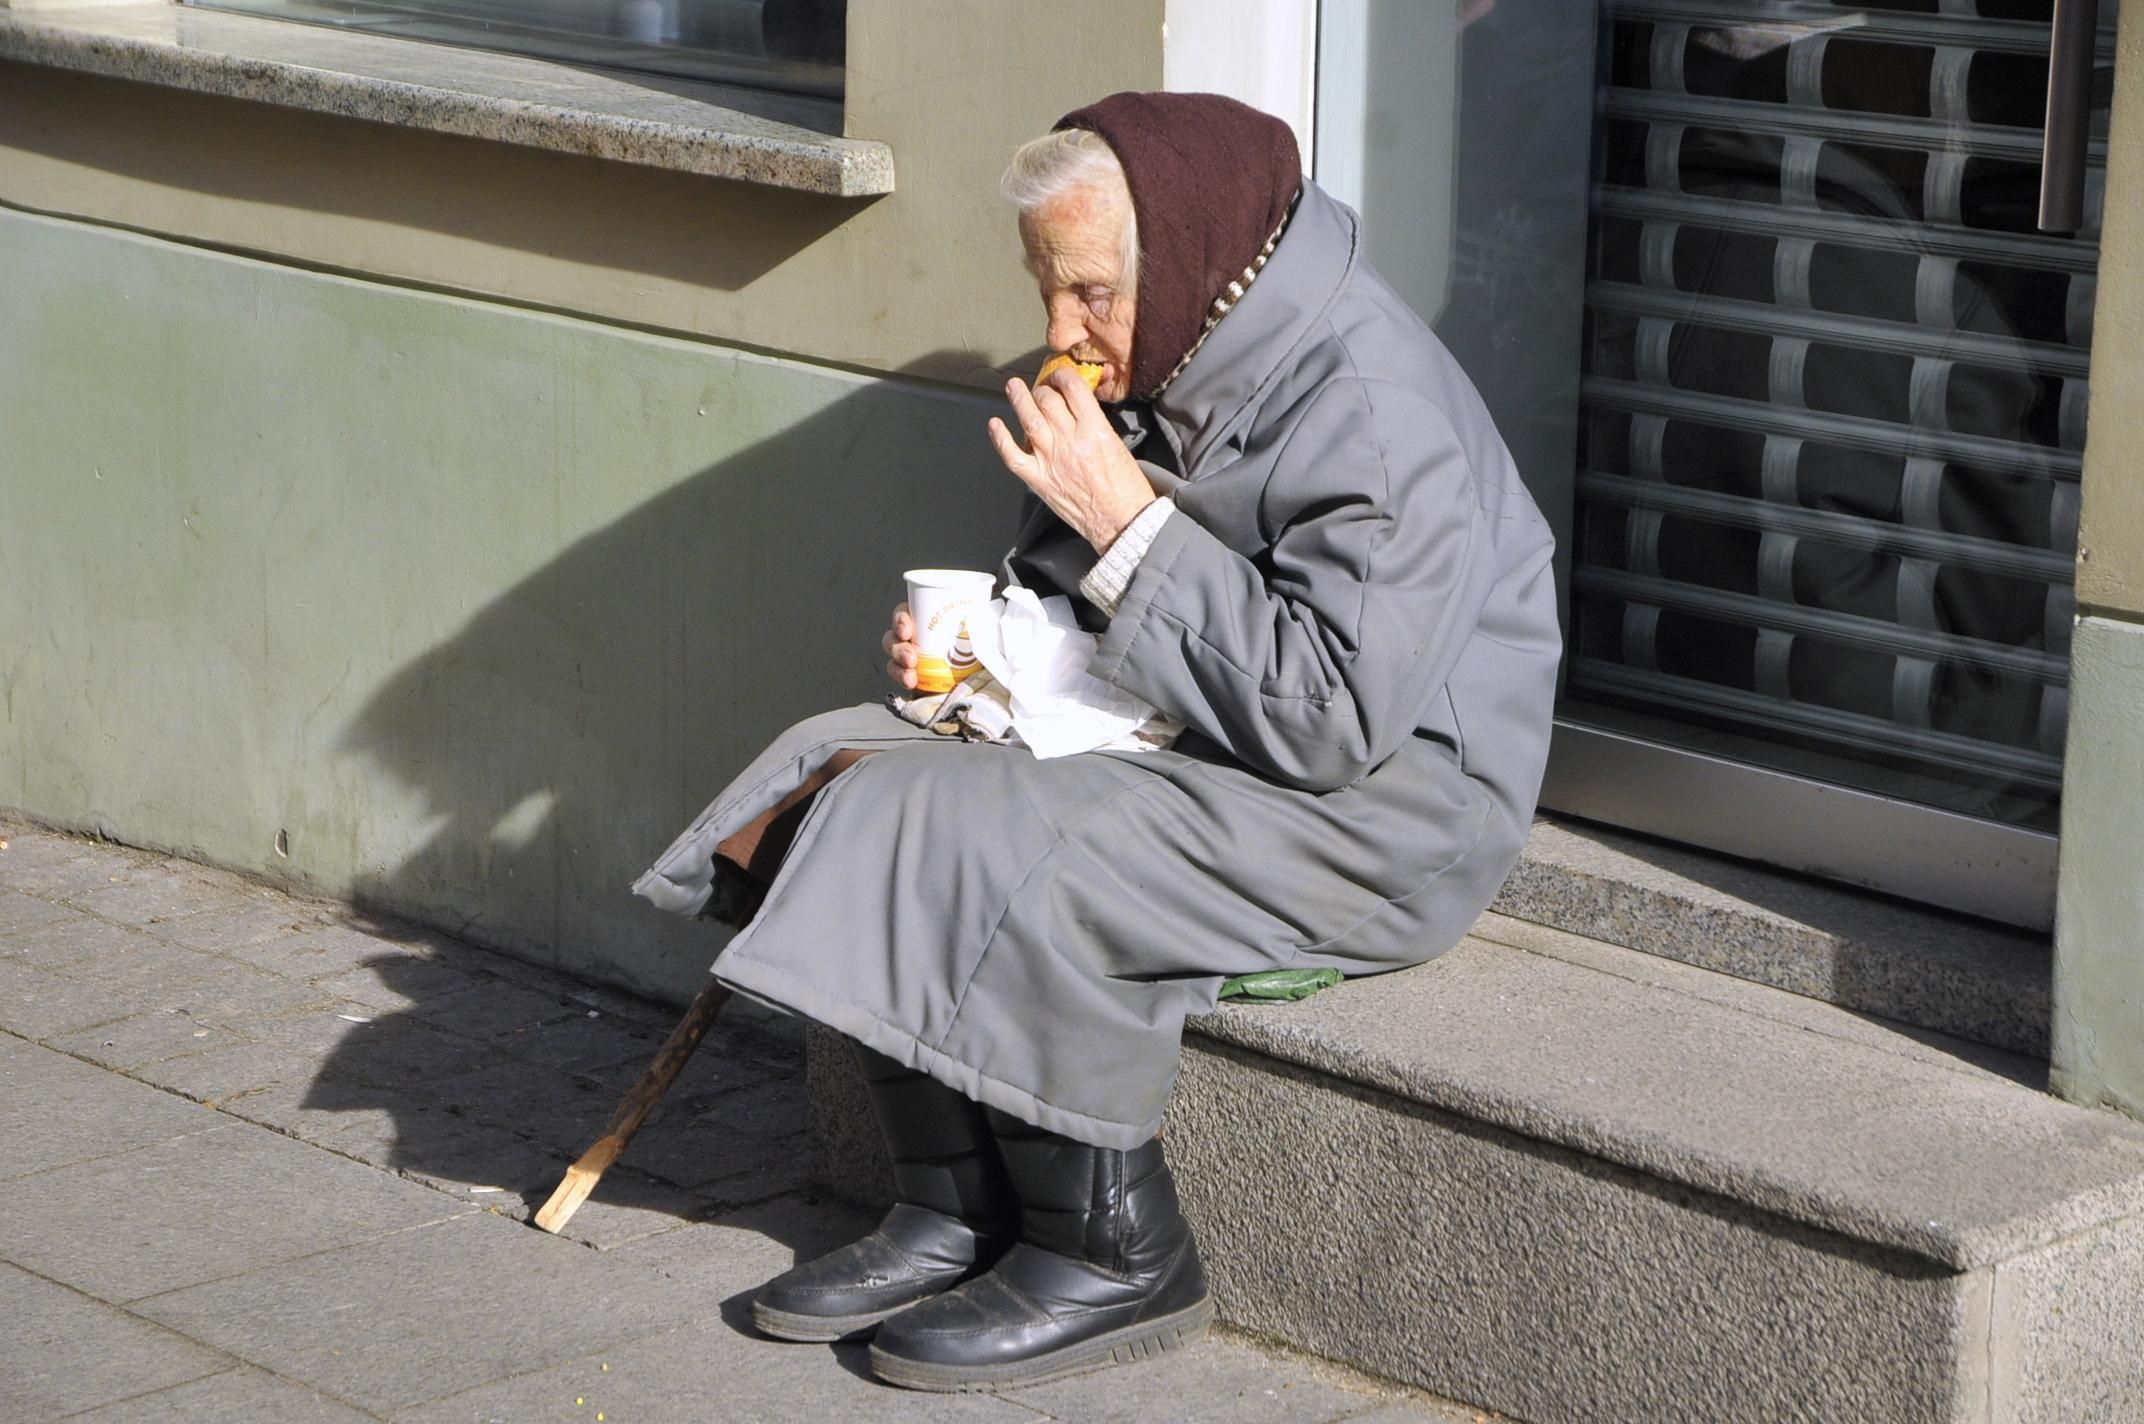 Порядка 29,6% жителей сегодняшней Литвы живут на грани нищеты, и этот показатель продолжает расти.